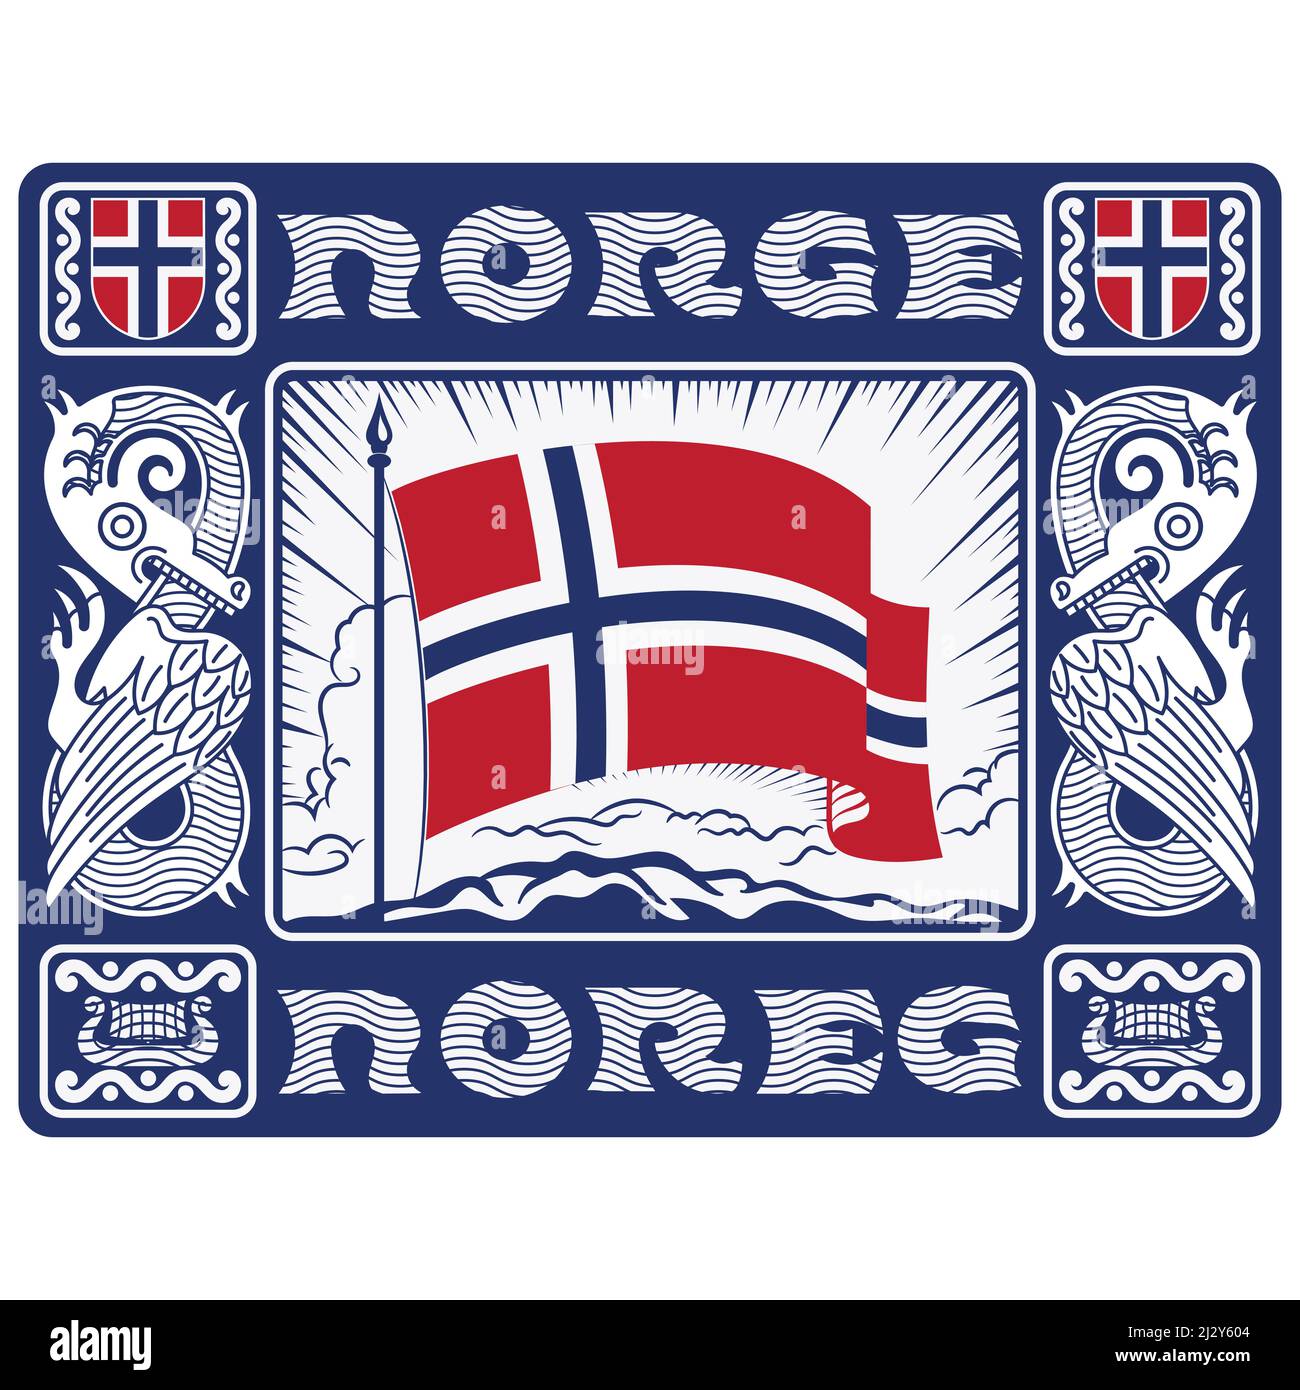 Skandinavisches Design. Norwegenfahne in den Strahlen der aufgehenden Sonne, dekorativer Rahmen mit Drachen im altnordischen Stil Stock Vektor